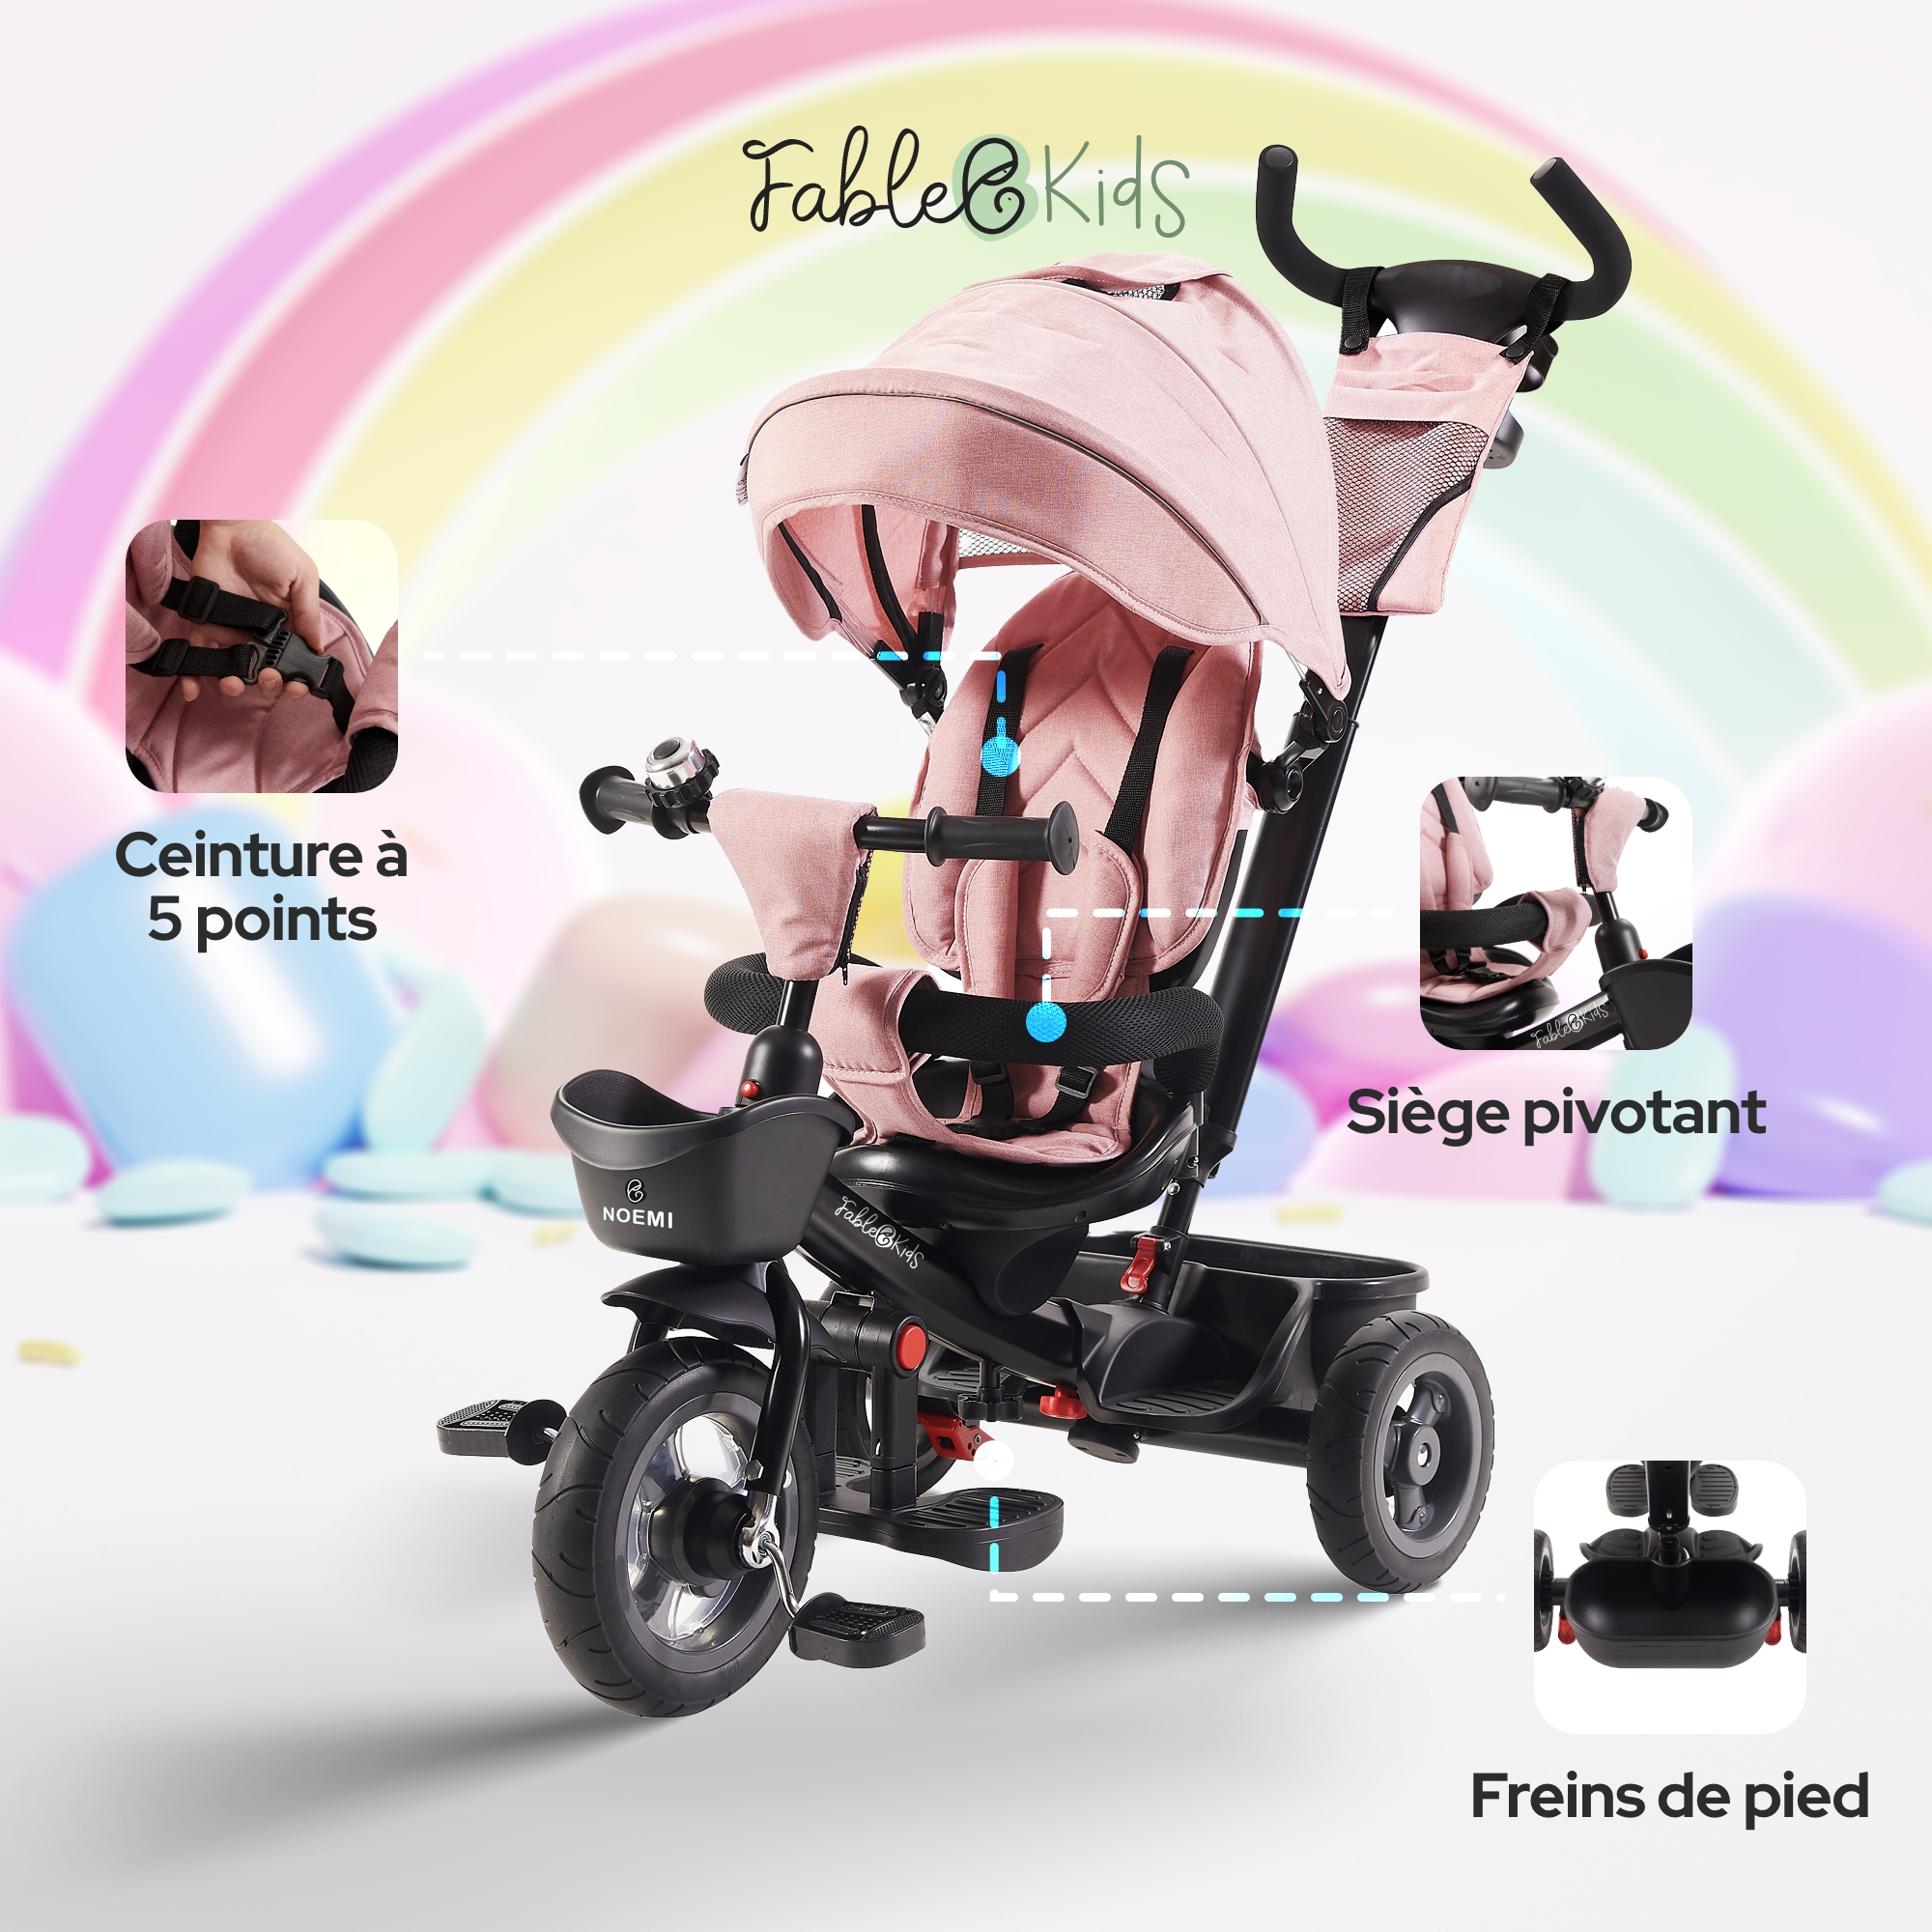 FableKids Siège-auto pour enfants Ceinture de sécurité 3 points à